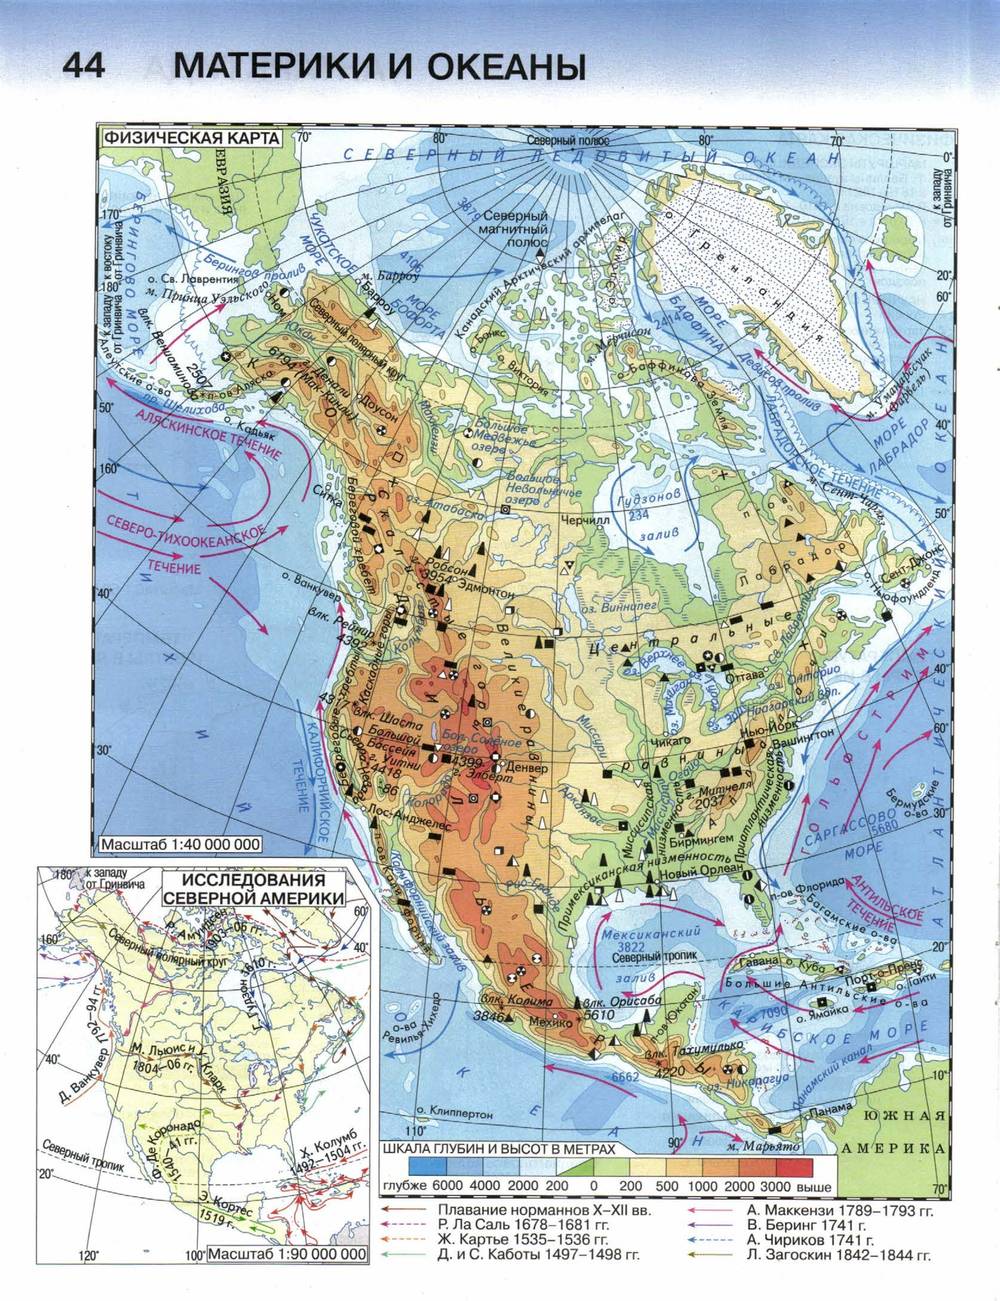 Полезные ископаемые северной америки на контурной карте. Физическая карта Северной Америки 7 класс география. Физическая карта Северной Америки 7 класс атлас крупным планом. Северная Америка карта атлас по географии 7 класс. Физическая карта Северной Америки 7 класс атлас.